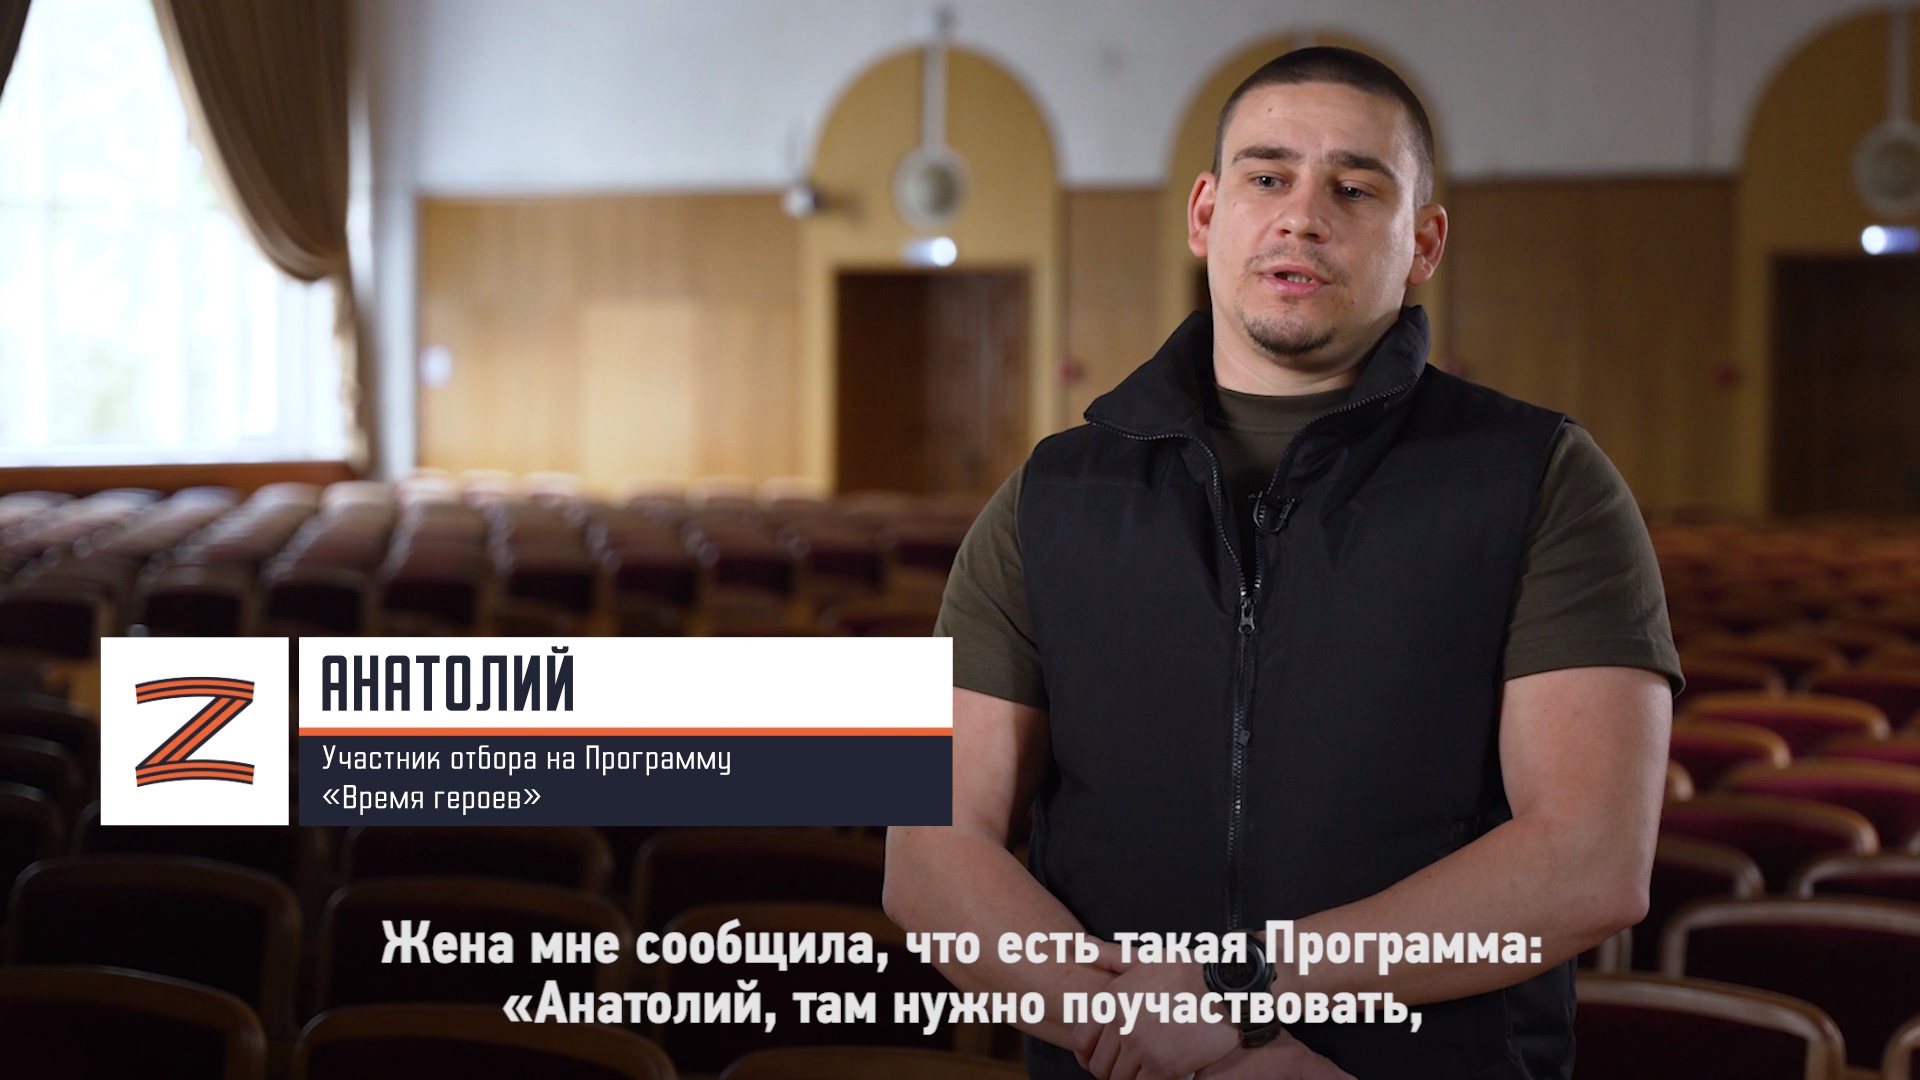 Участник отбора на Программу «Время героев» Анатолий о своём участии в Программе